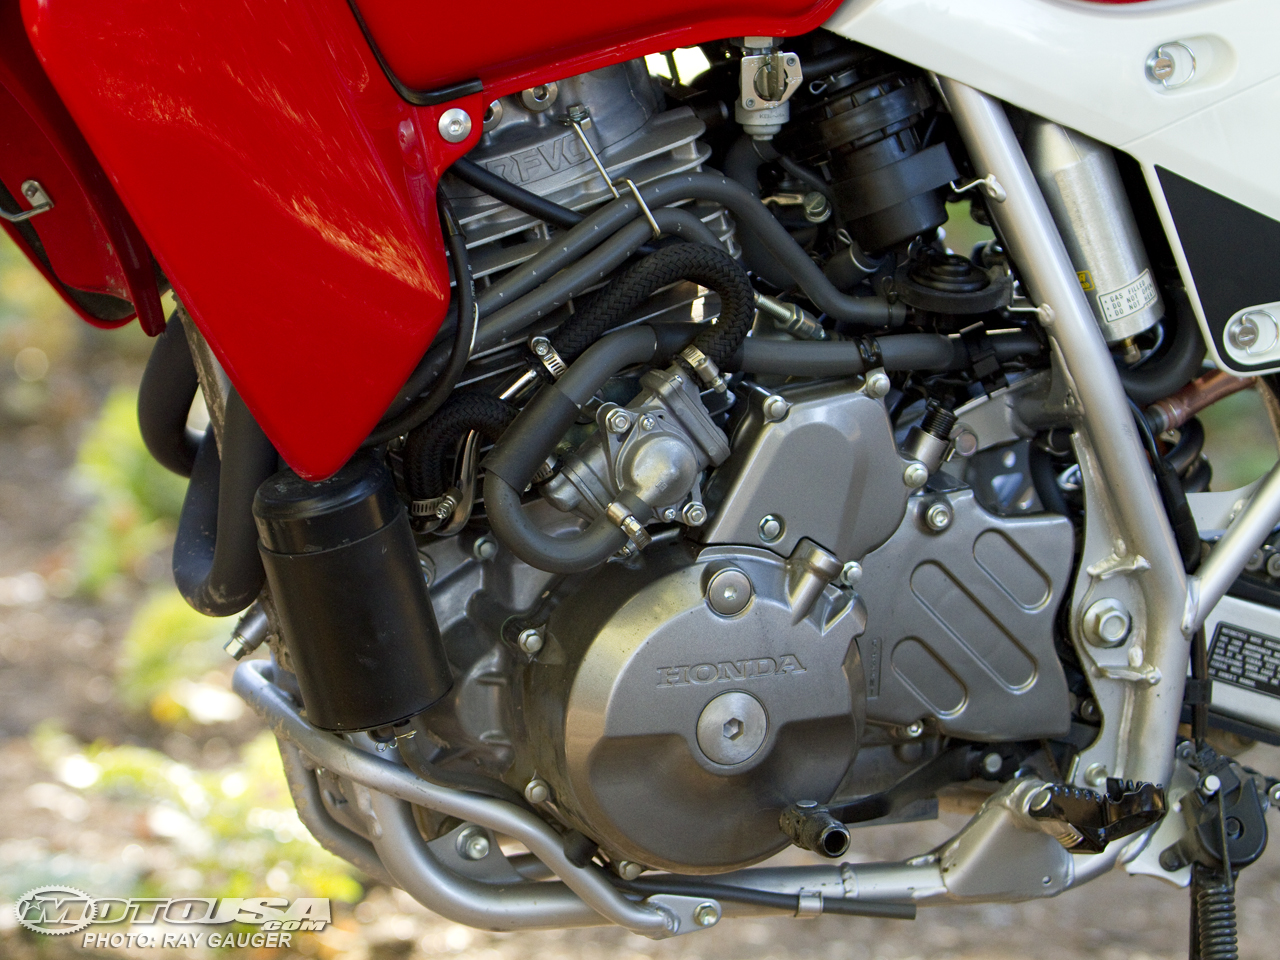 2009款本田XR650L摩托车图片3